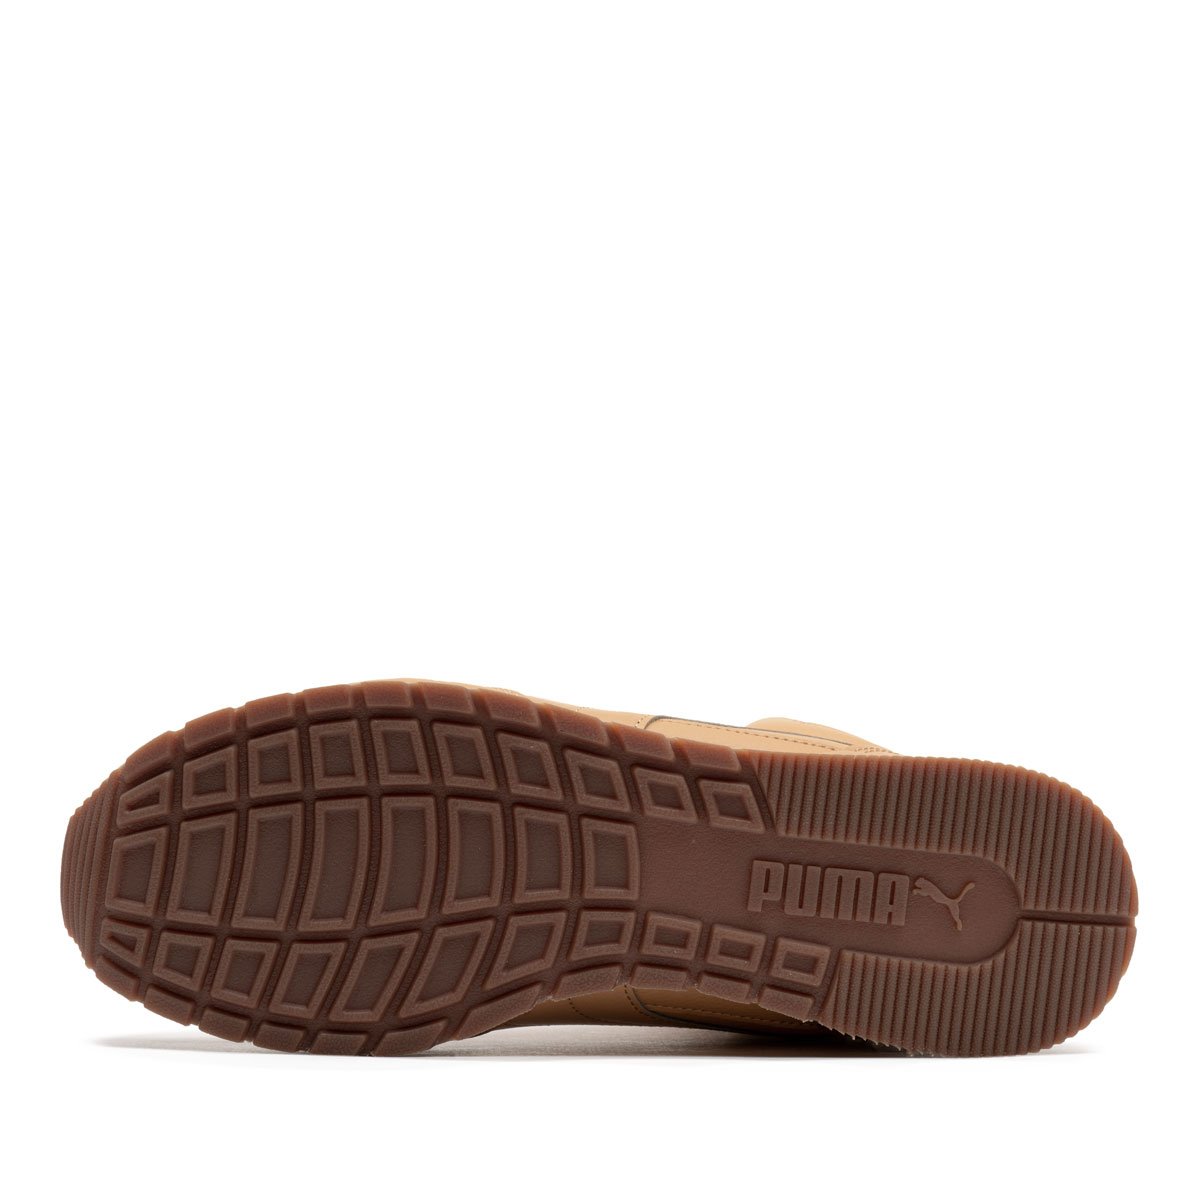 Puma ST Runner V3 Mid Leather Мъжки спортни обувки 387638-05